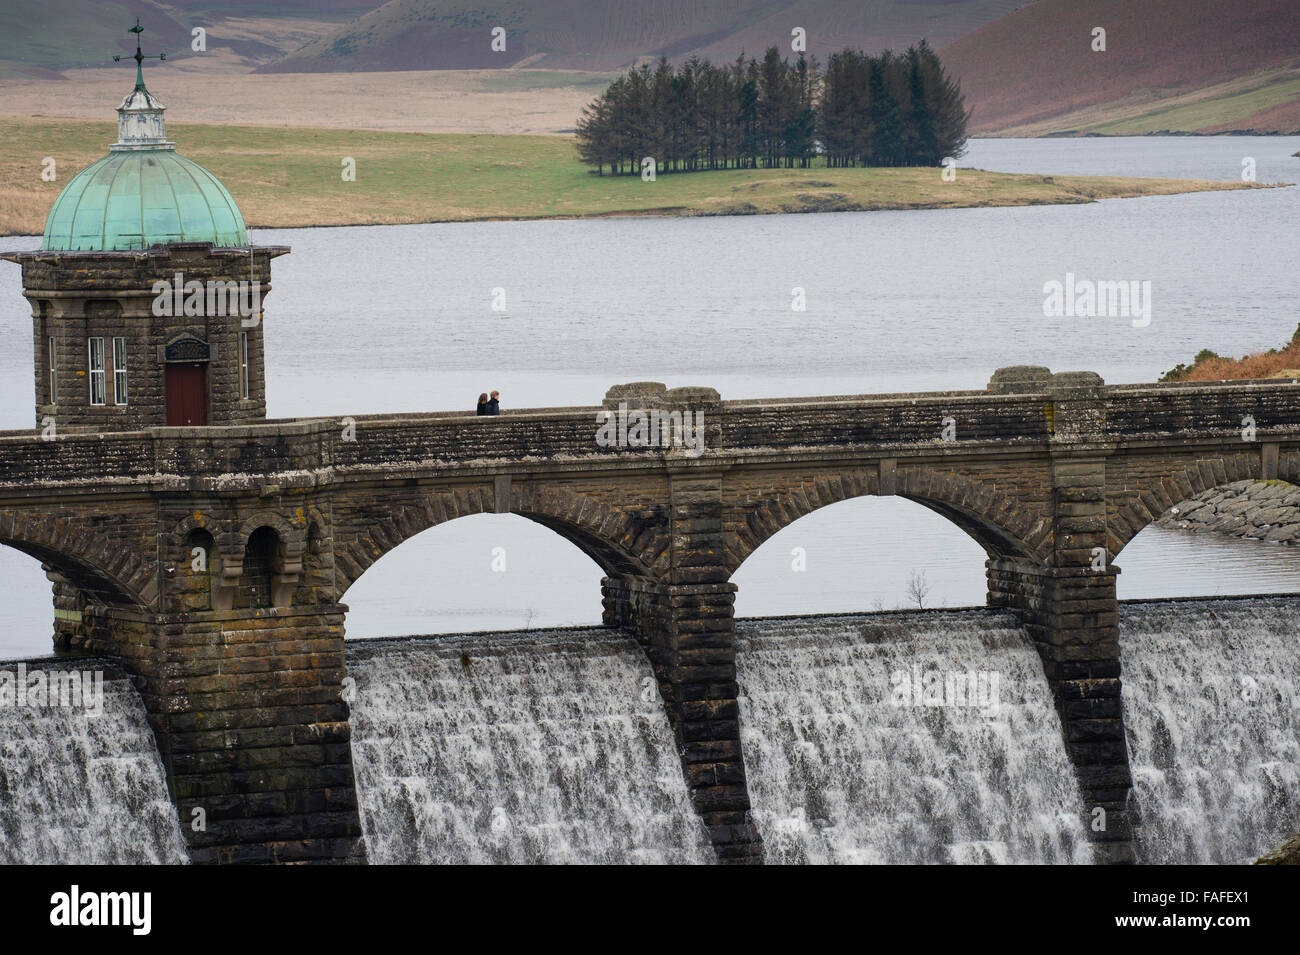 Débordement de l'eau se répandre au barrage et Craig Goch, Elan Valley water system, conçu pour fournir un approvisionnement sûr en eau douce , alimenté par un aqueduc par gravité à la ville de Birmingham, à environ 70 km à l'Est. Journée d'hiver décembre, Powys Pays de Galles, Royaume-Uni Banque D'Images